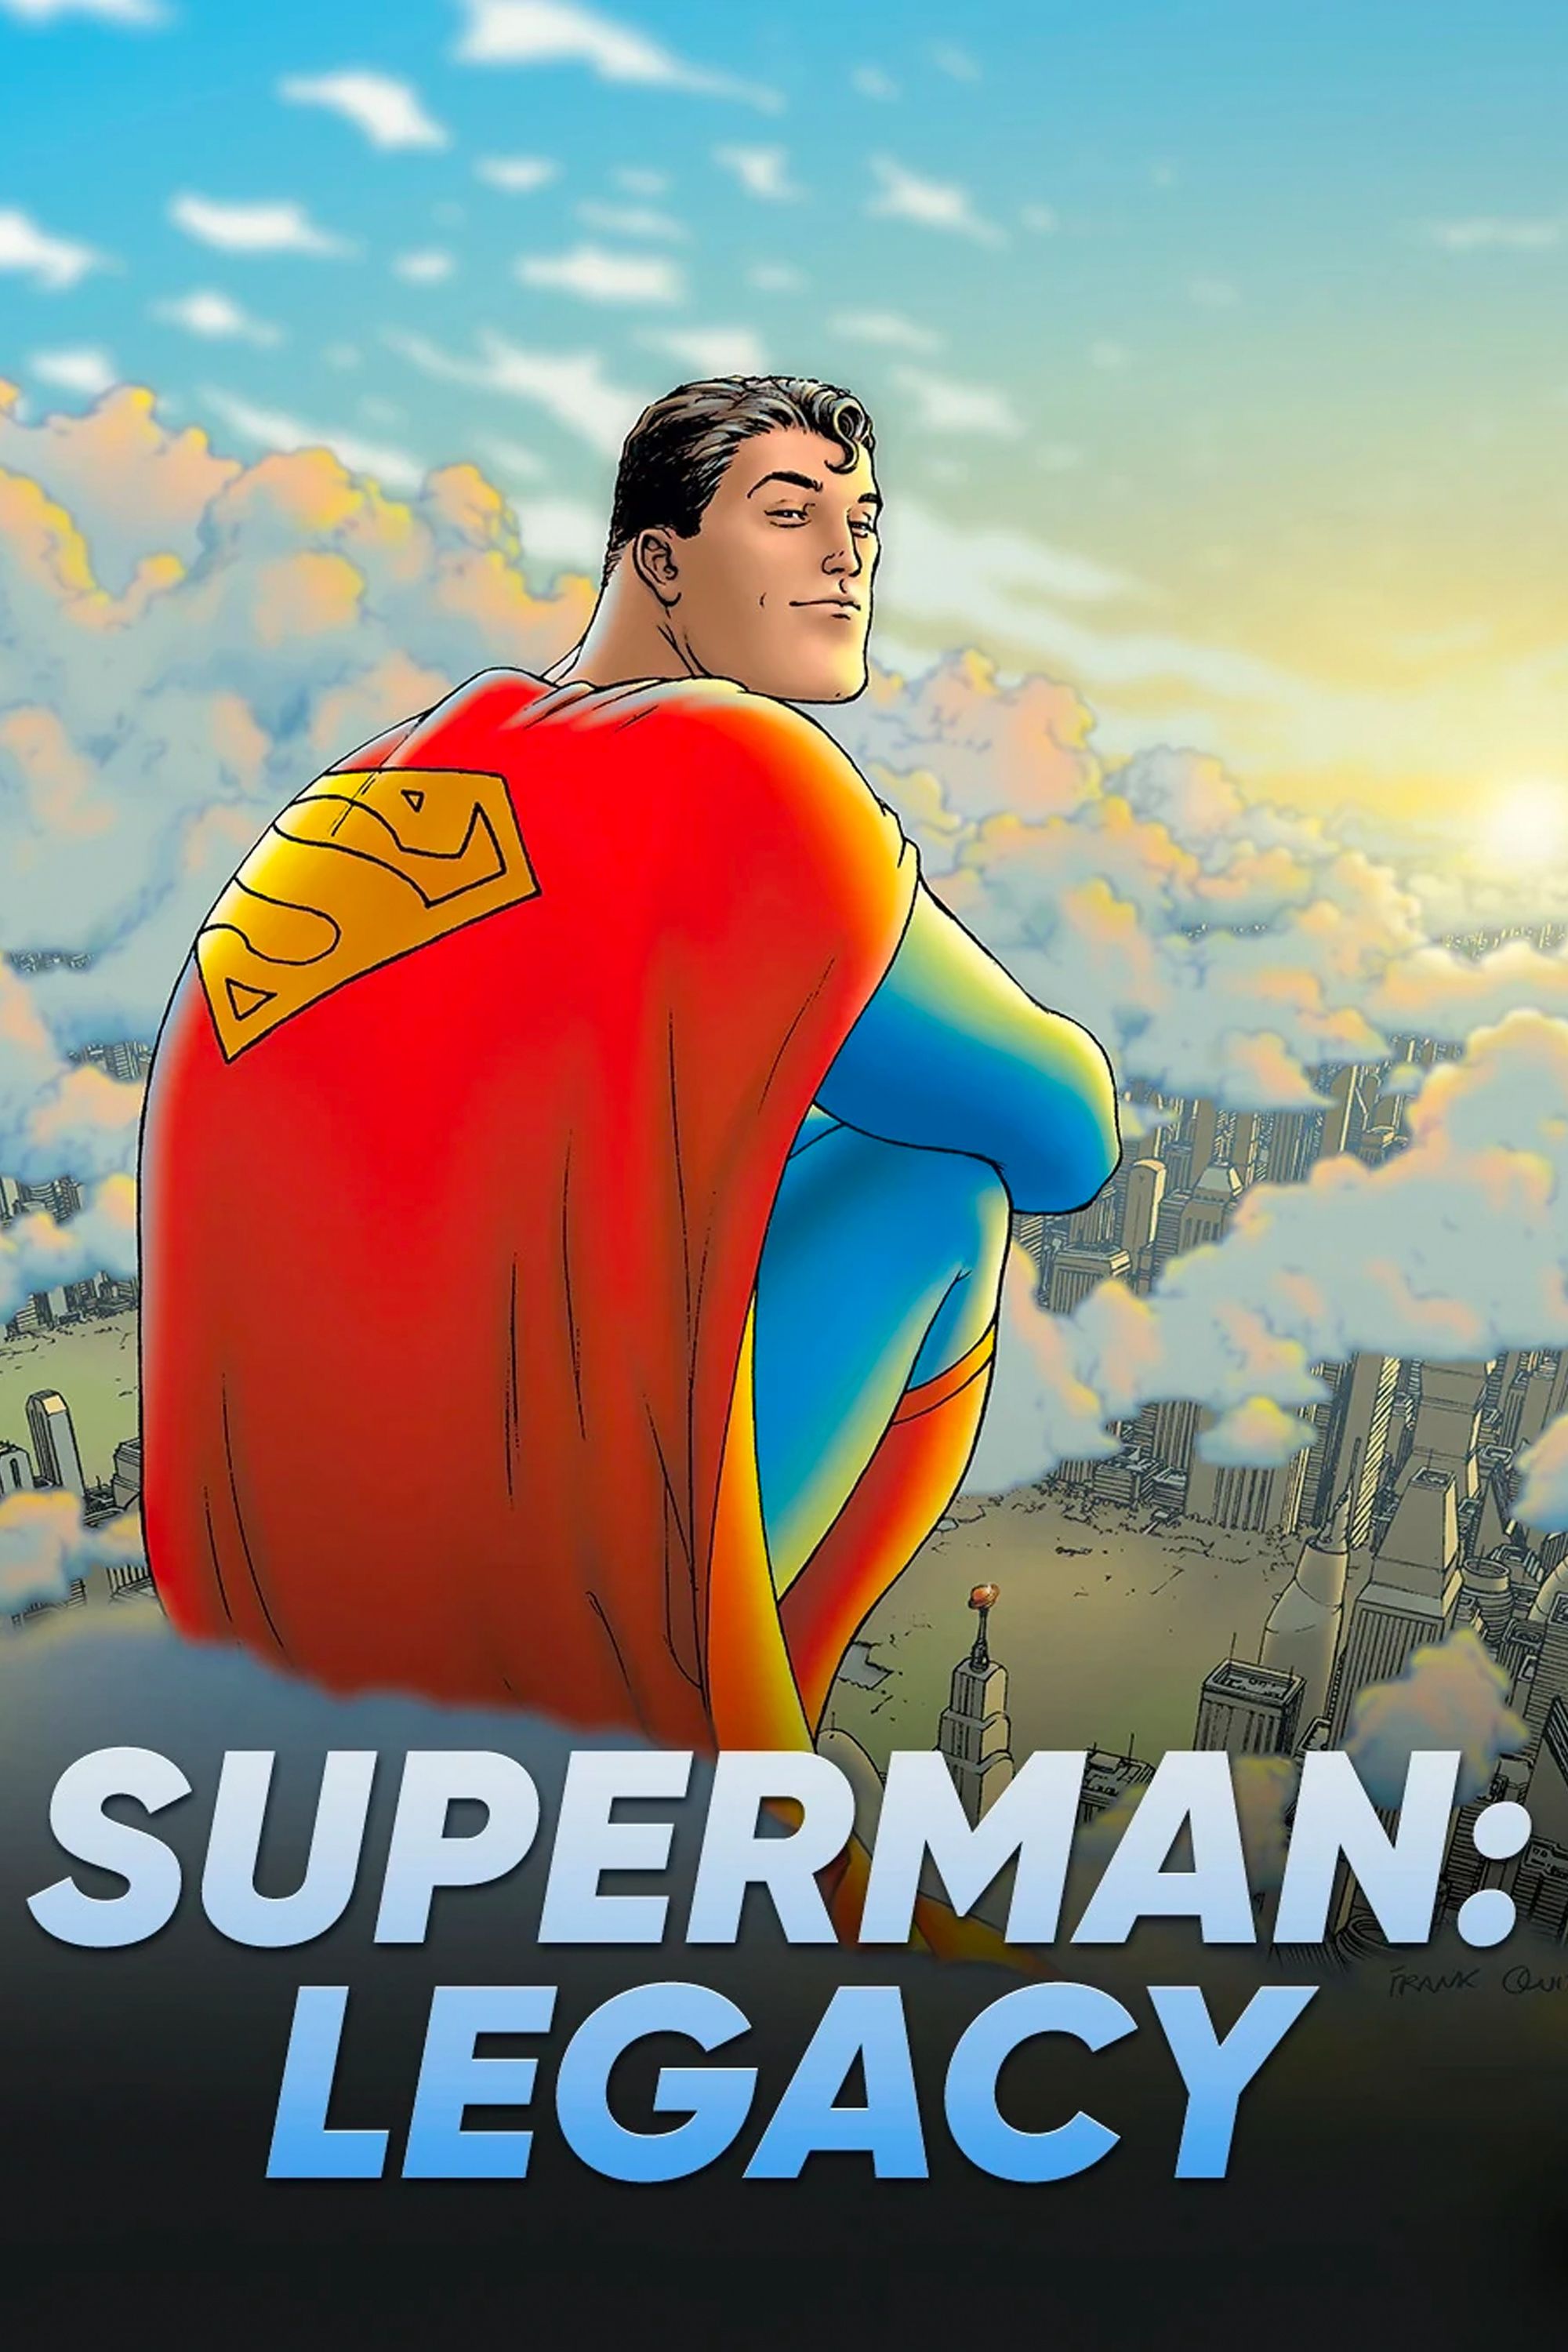 Capa em quadrinhos do legado do Superman